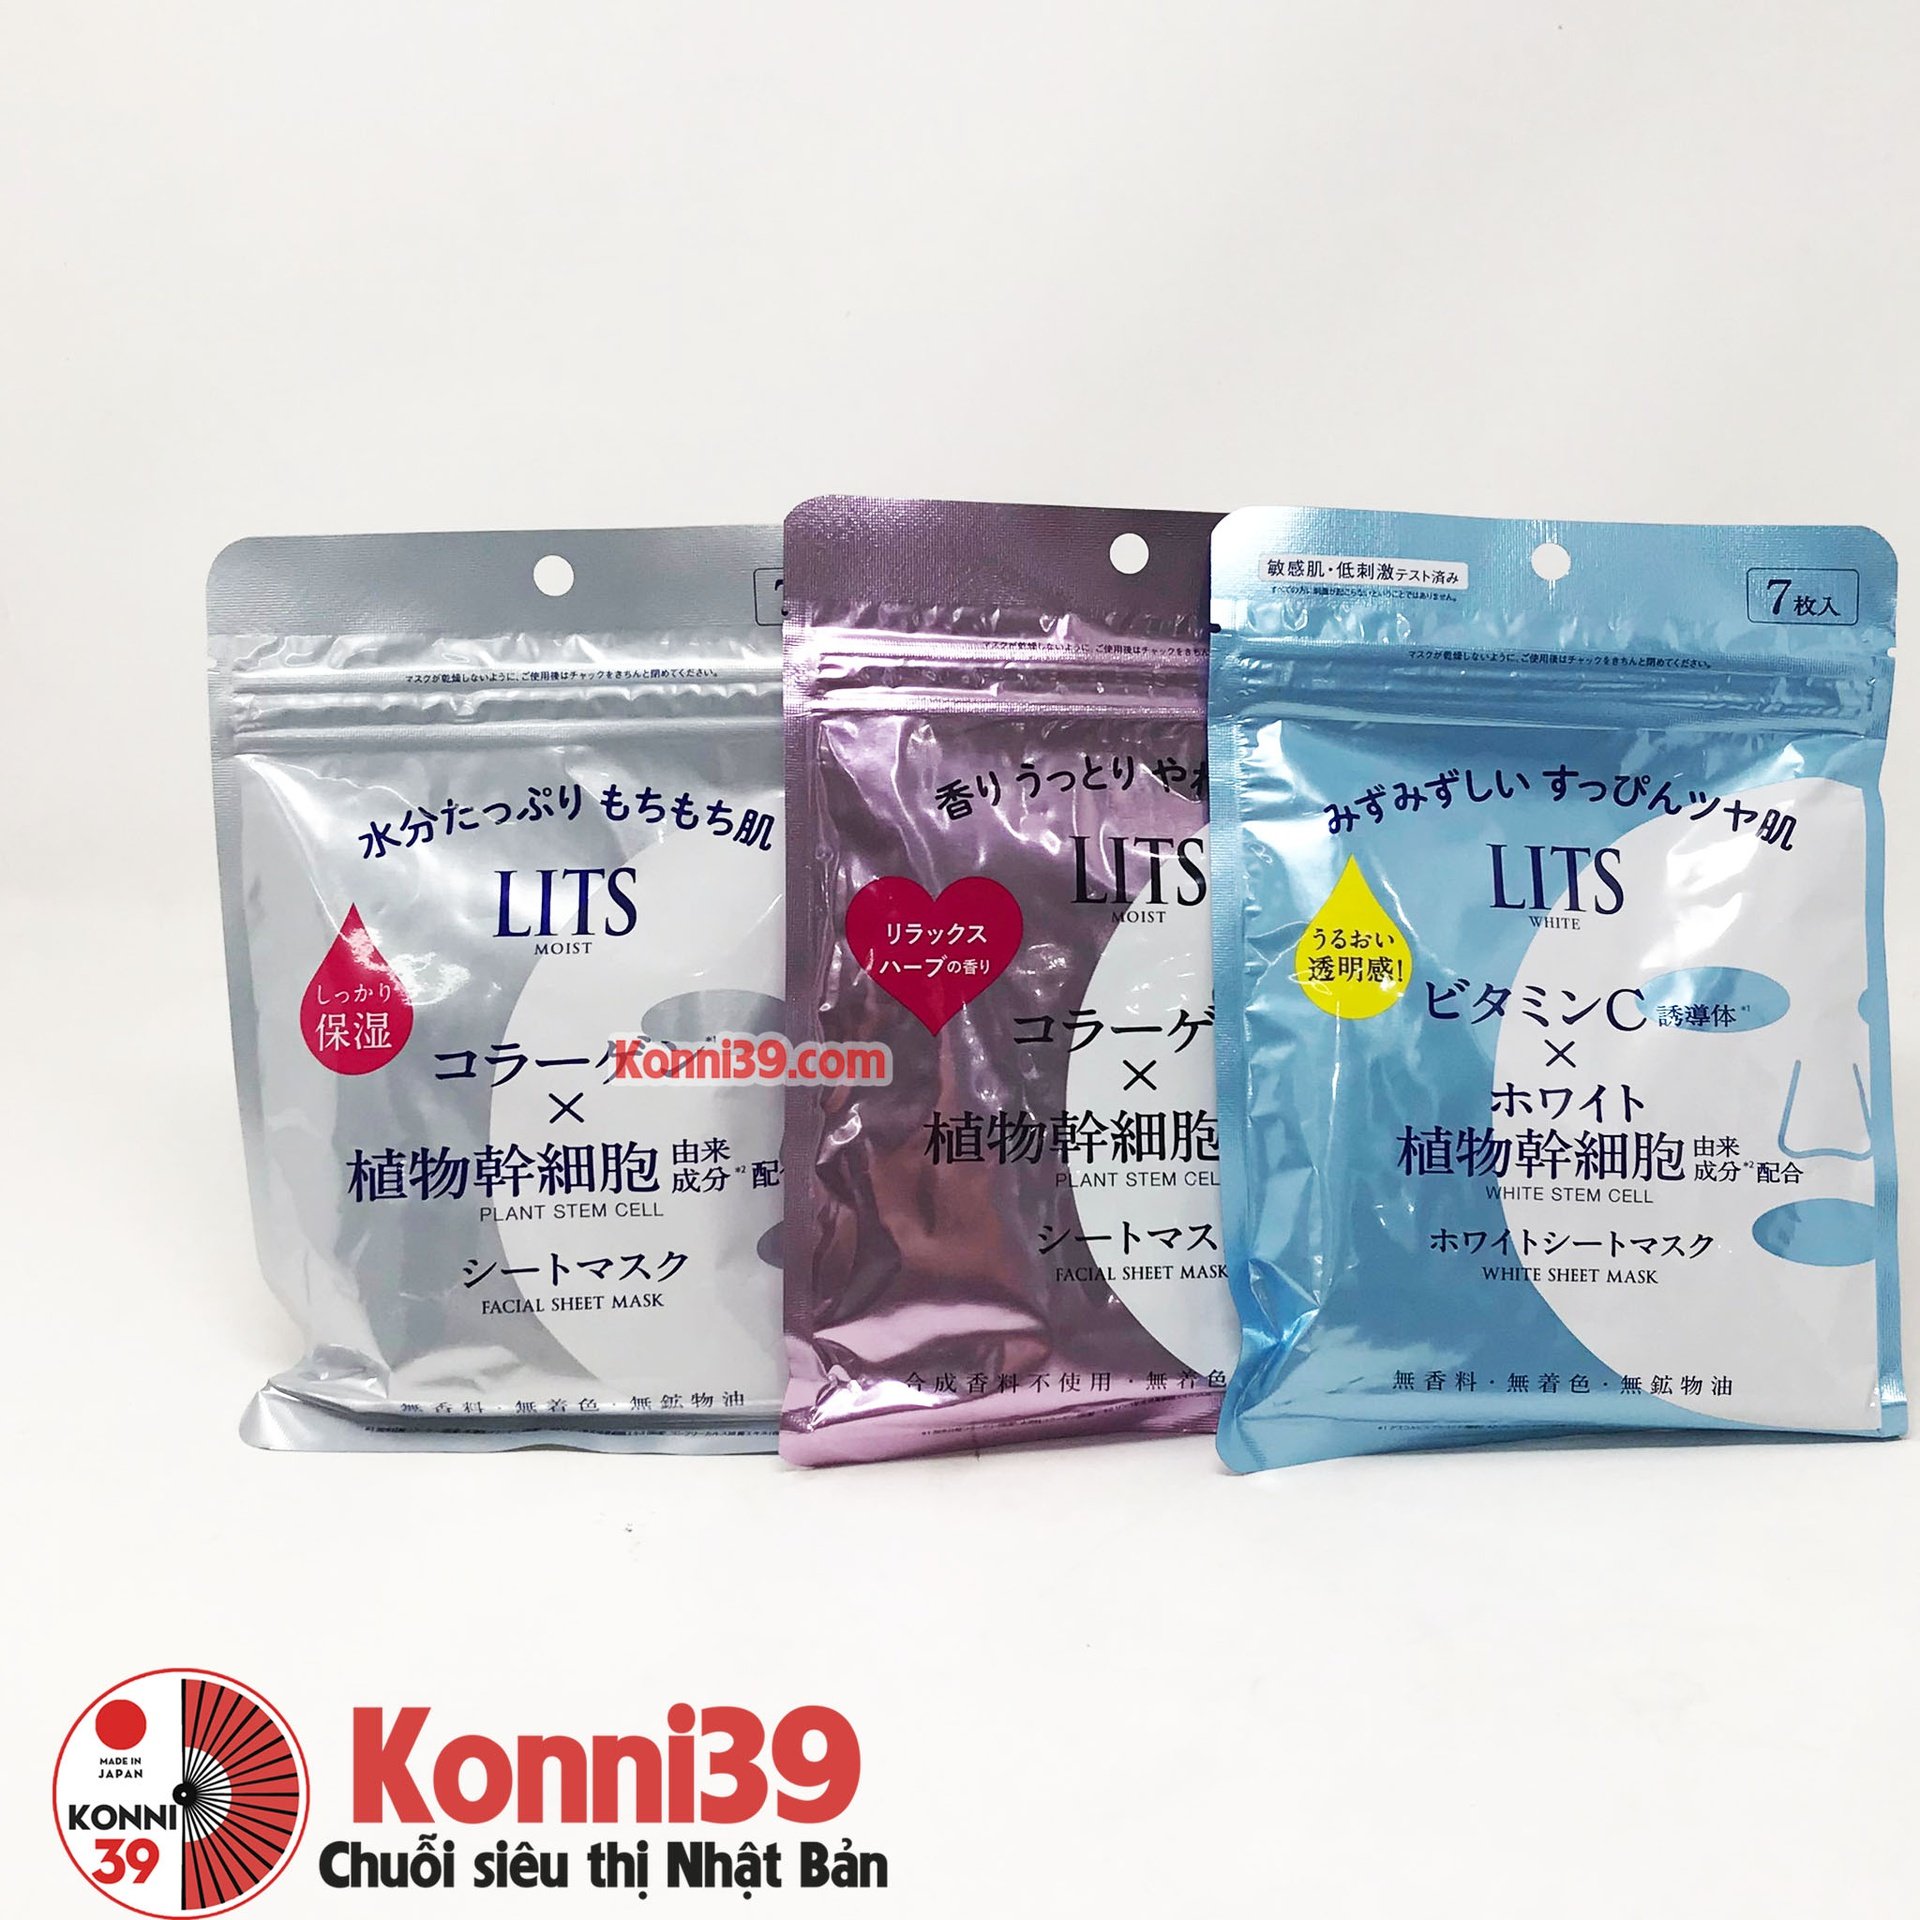 Mặt nạ Lits Stem Cell Perfect Mask túi 7 miếng (3 loại) - hàng nội địa –  Chuỗi siêu thị Nhật Bản nội địa - MADE IN JAPAN Konni39 tại Việt Nam